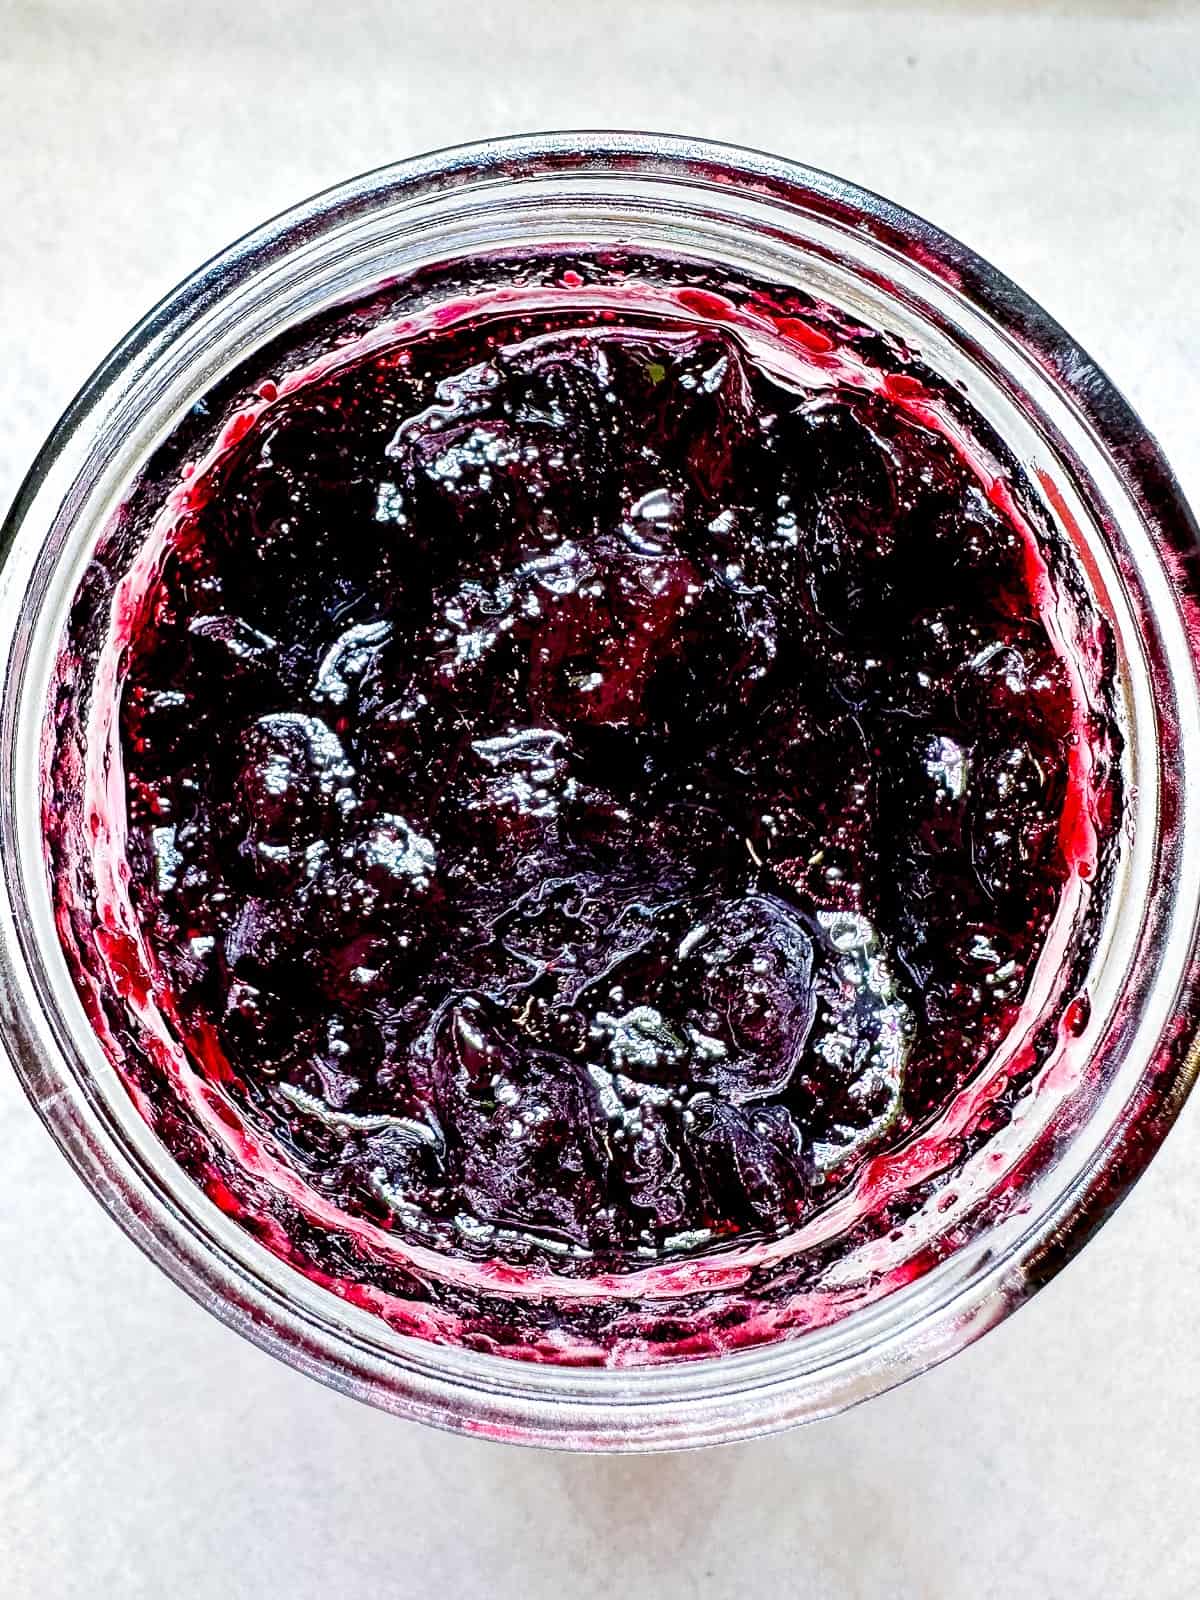 A mason jar full of blueberry orange jam.